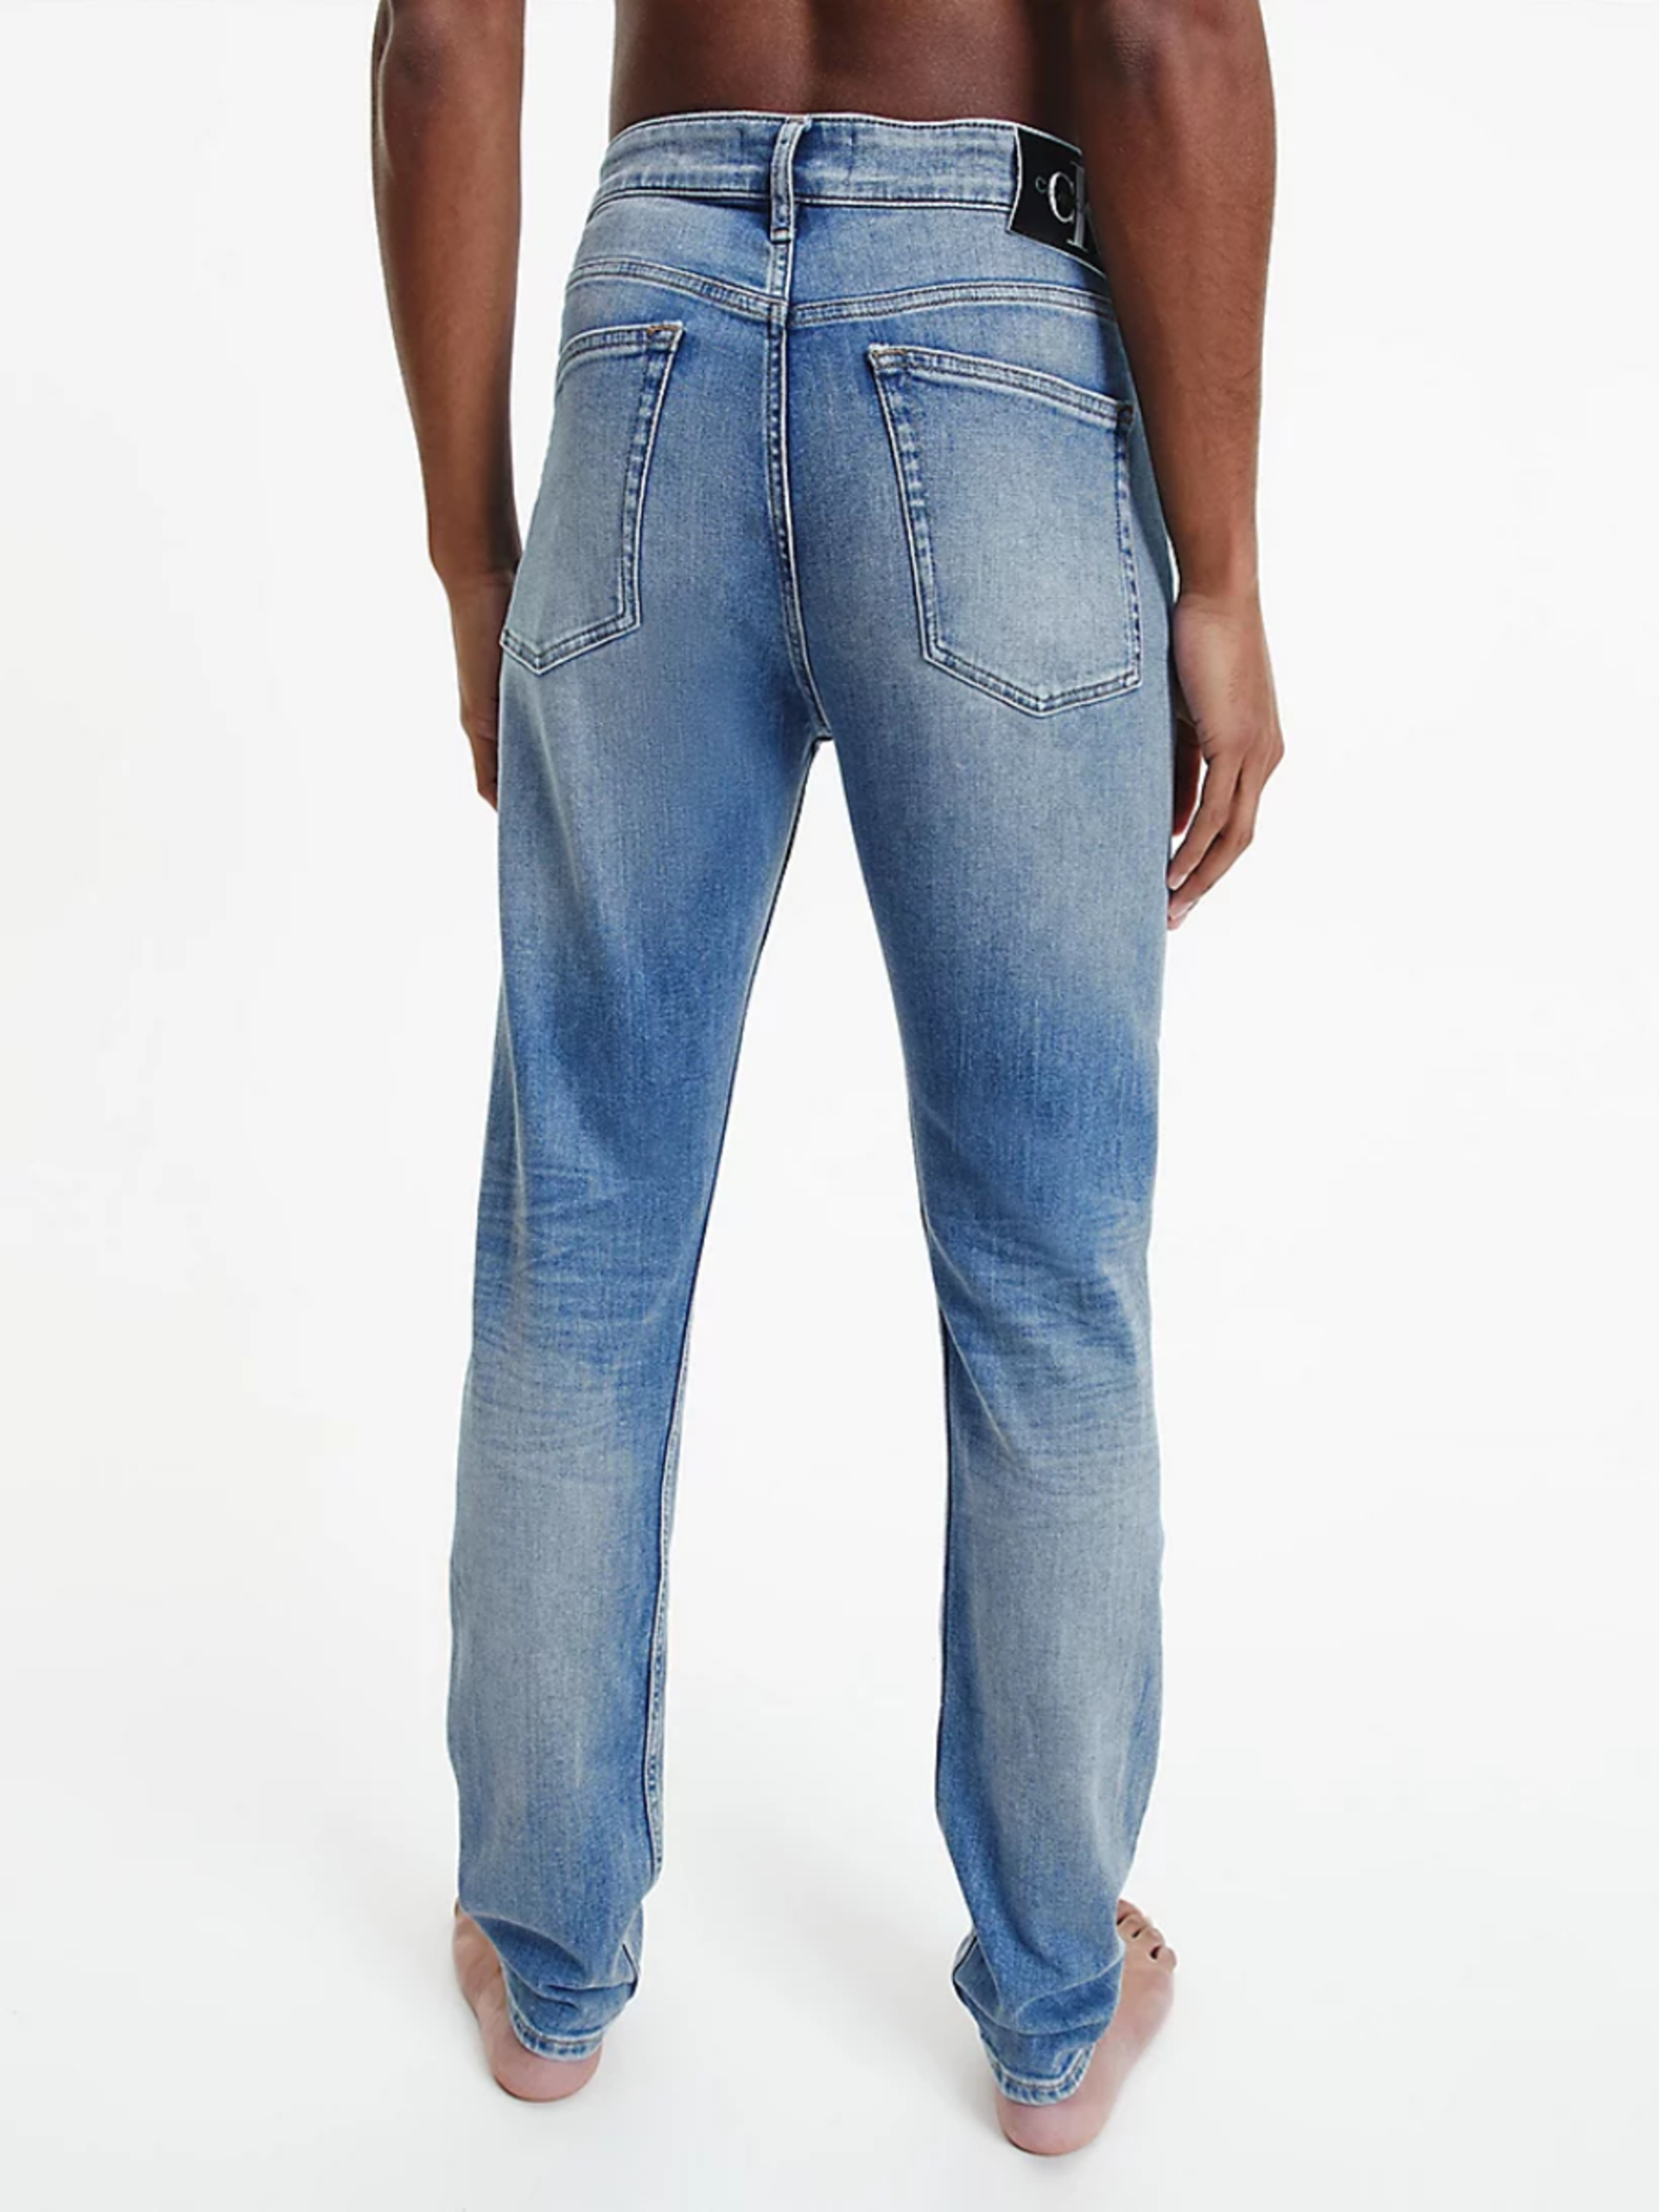 Calvin Klein pánské modré džíny - 30/30 (1A4)